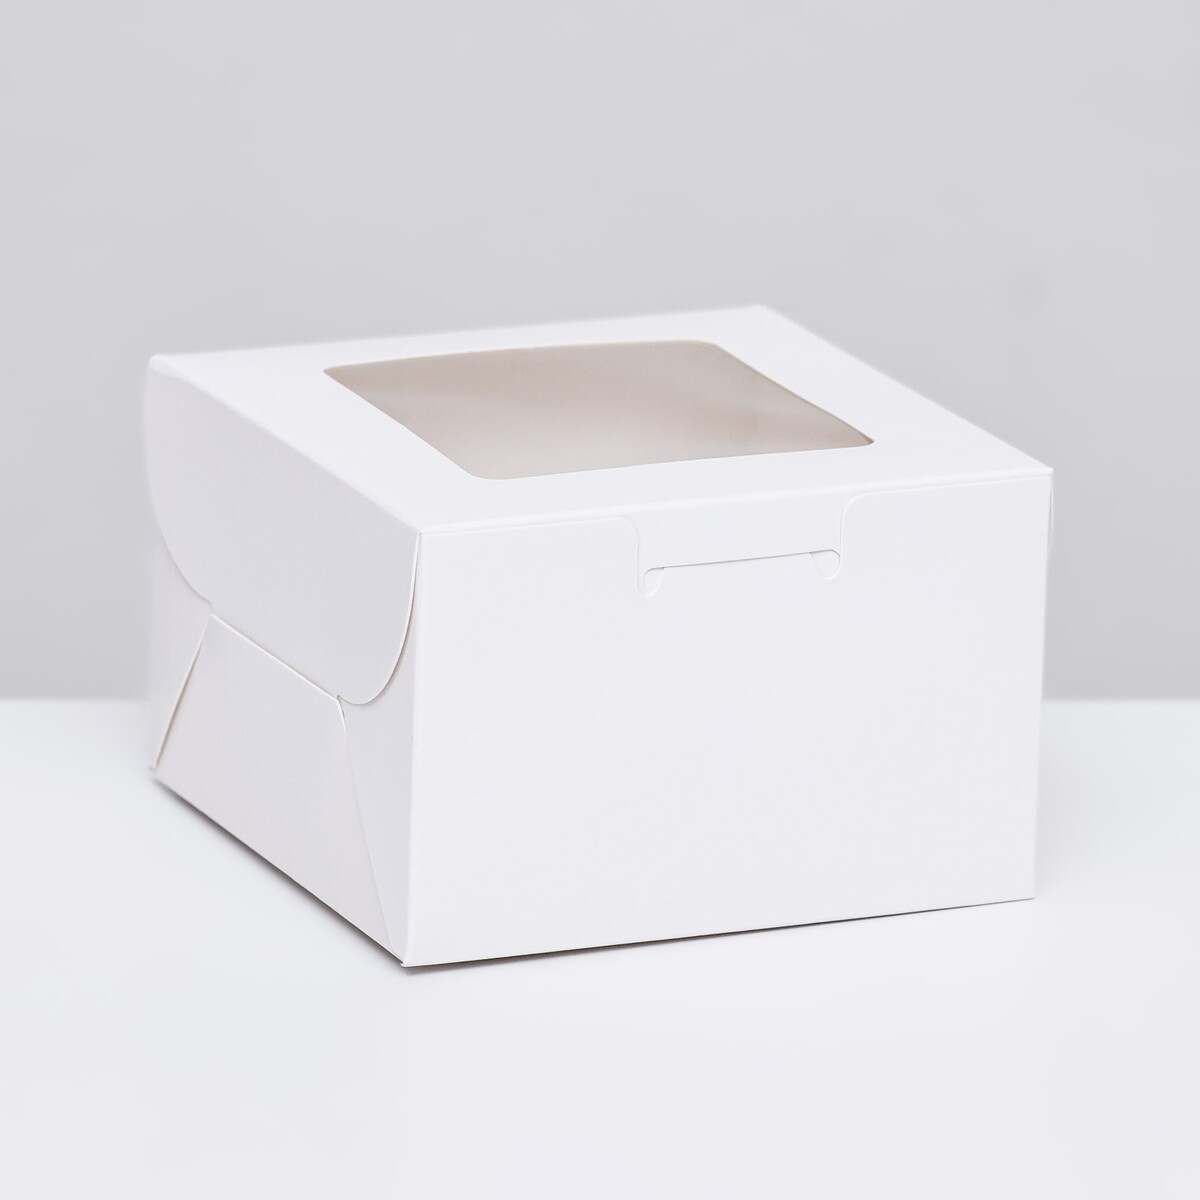 Коробка для десерта, белая, 10 х 10 х 6,5 см коробка для десерта белая 10 х 10 х 6 5 см